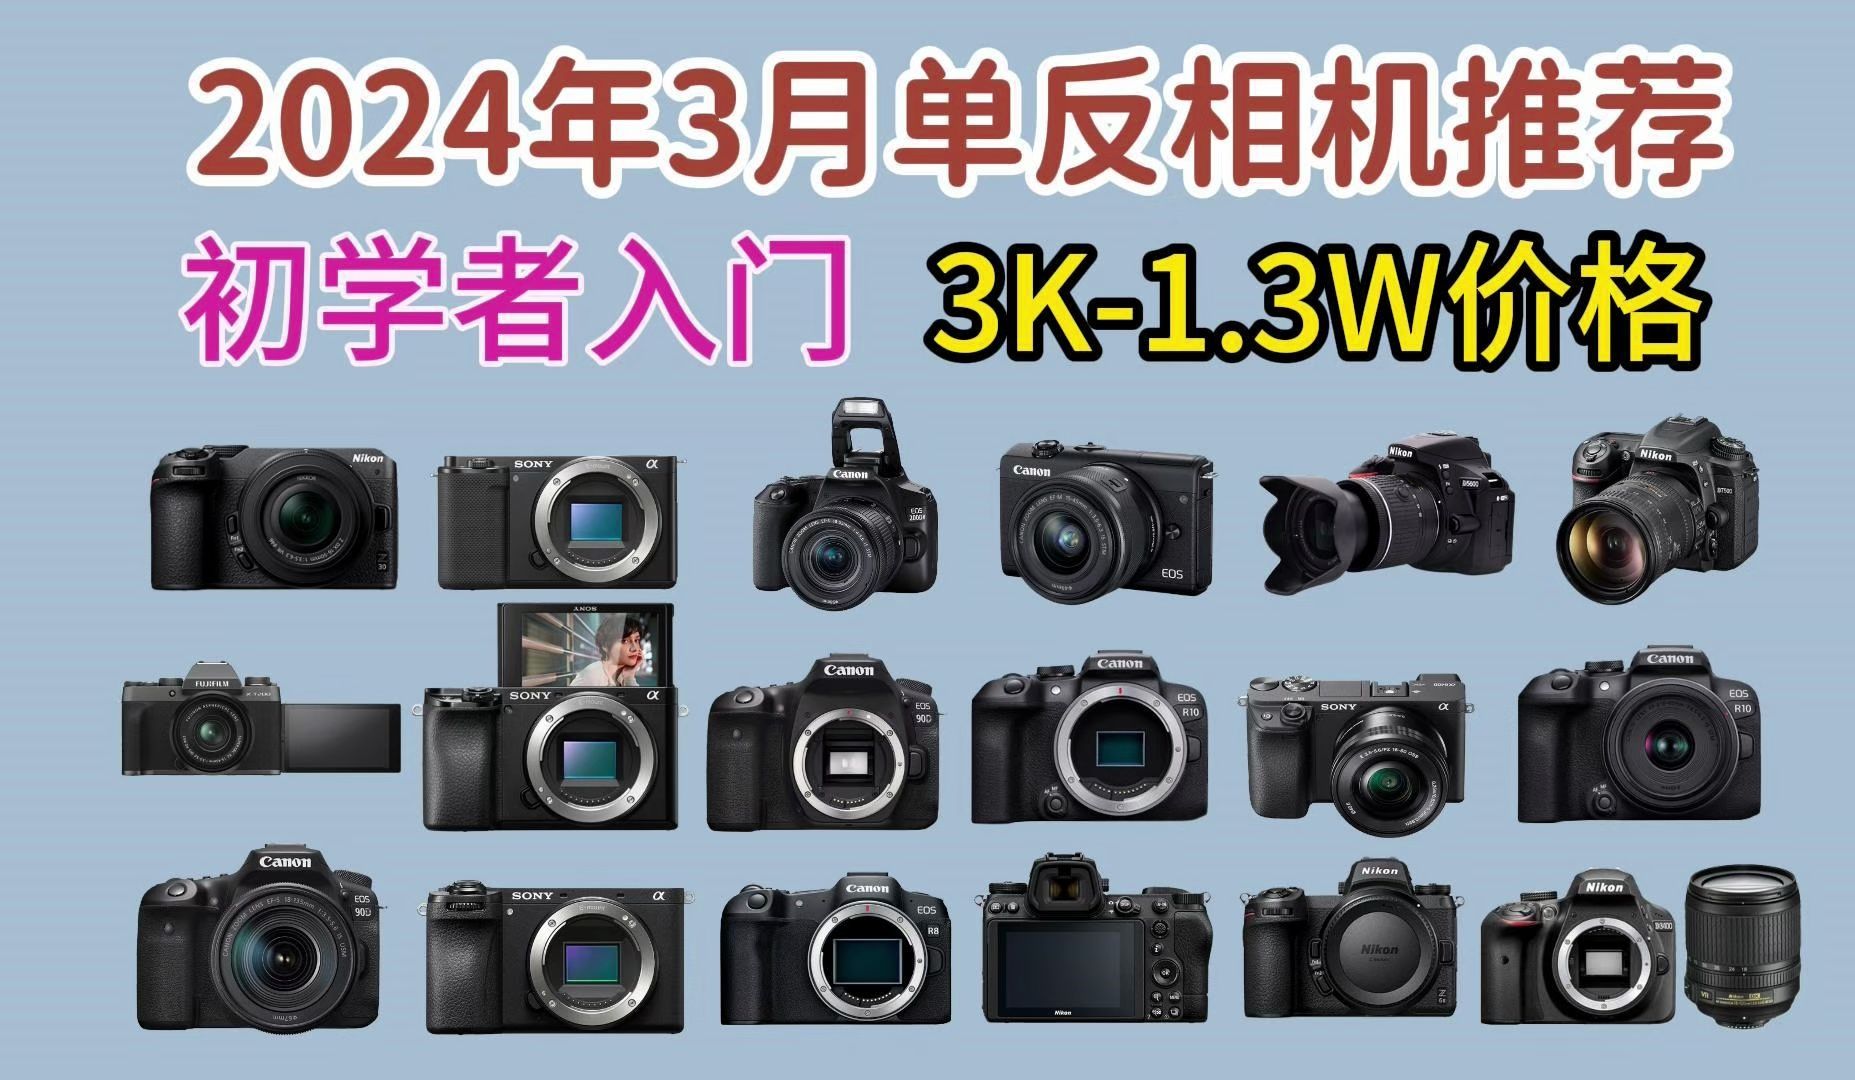 单反推荐】2024年3月高性价比新手小白 初学者 入门级单反推荐，3K-1.4W价位 只选对的 不选贵的，轻松挑选适合自己的相机！